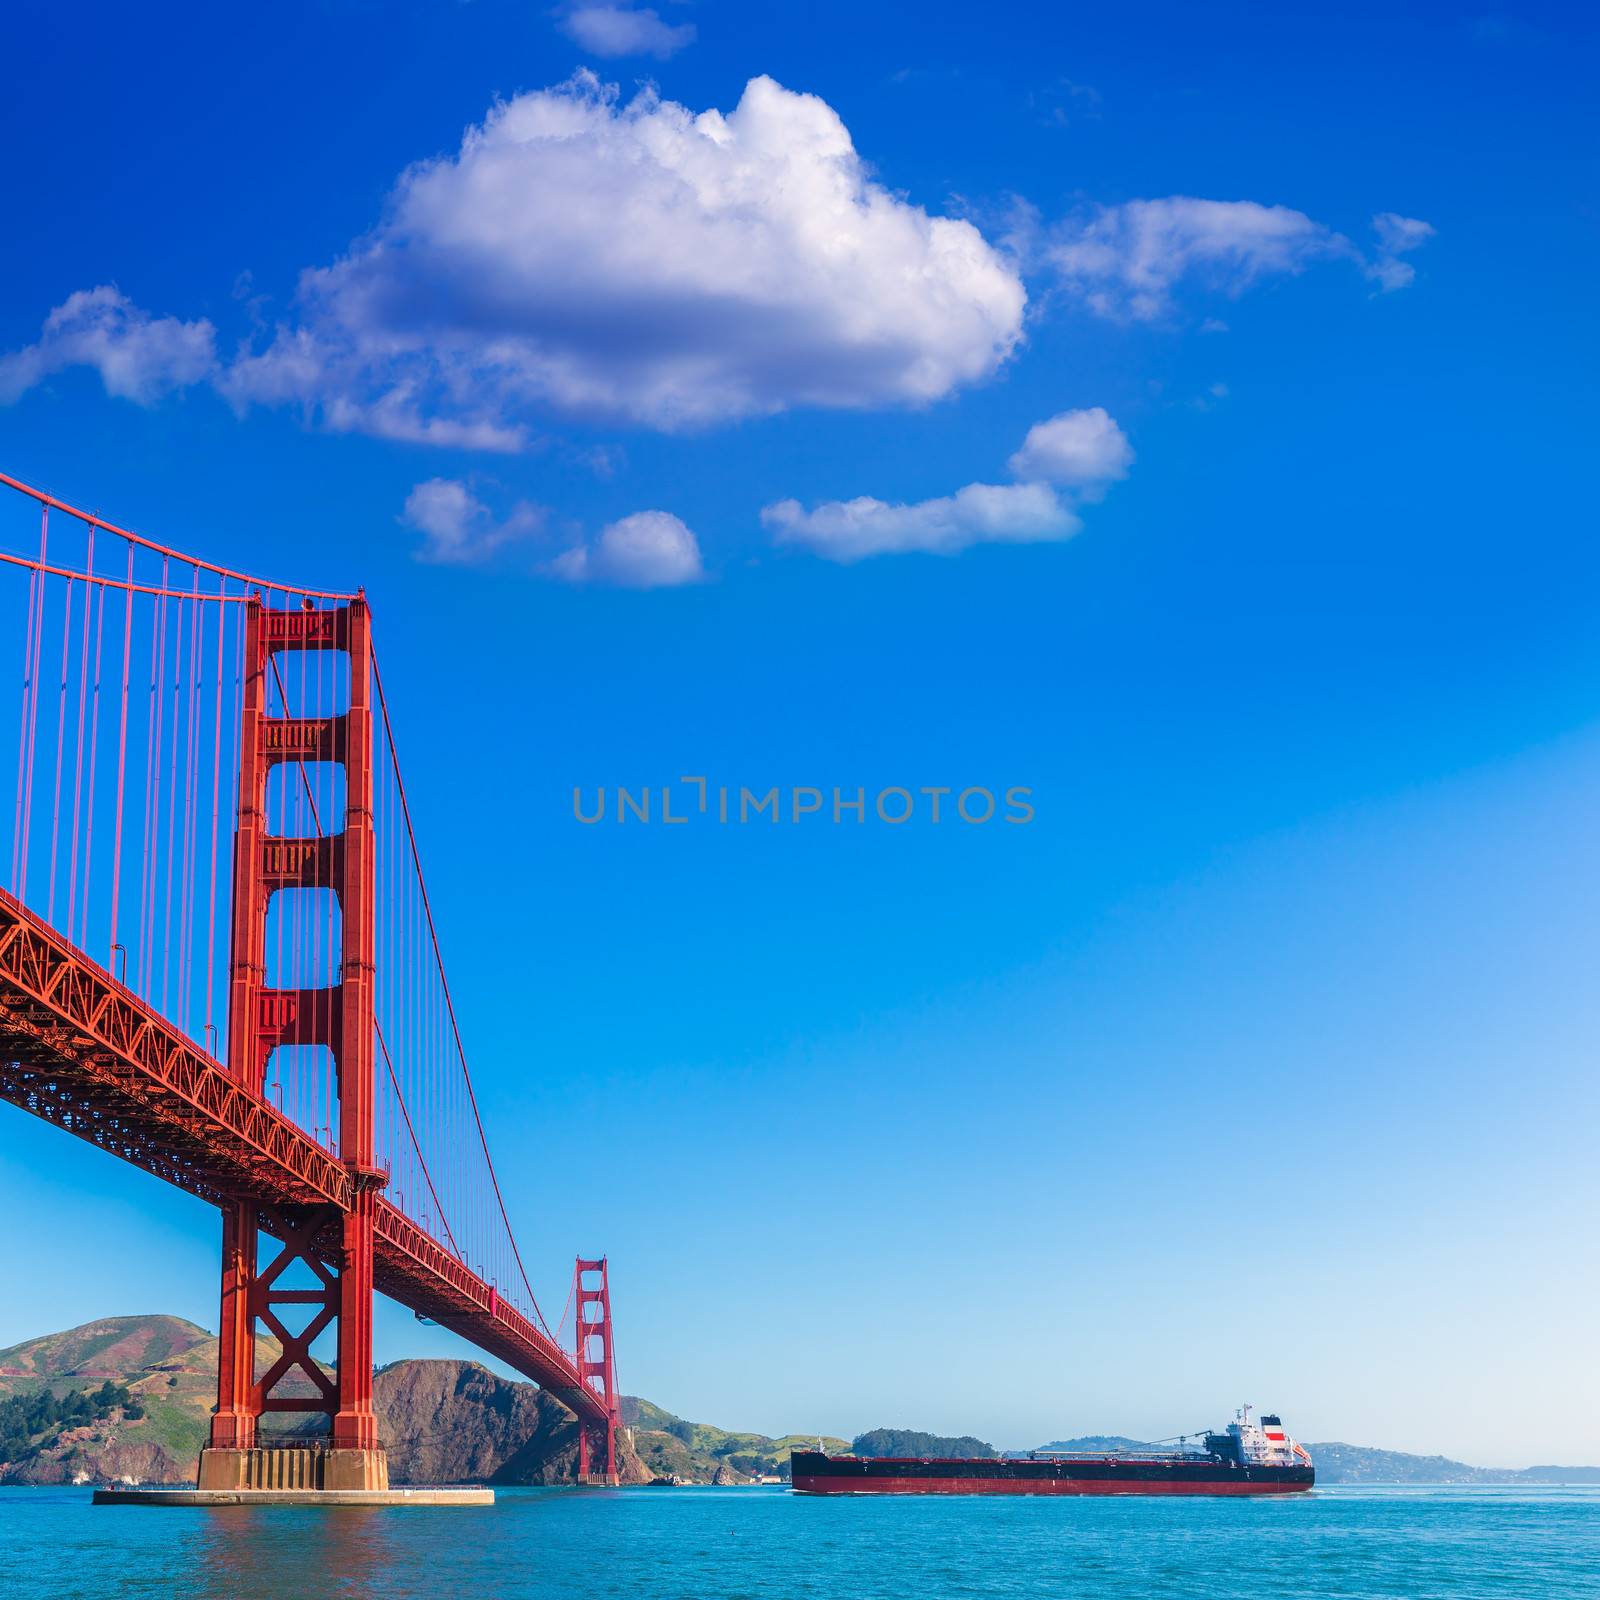 Golden Gate Bridge San Francisco from Presidio in California USA